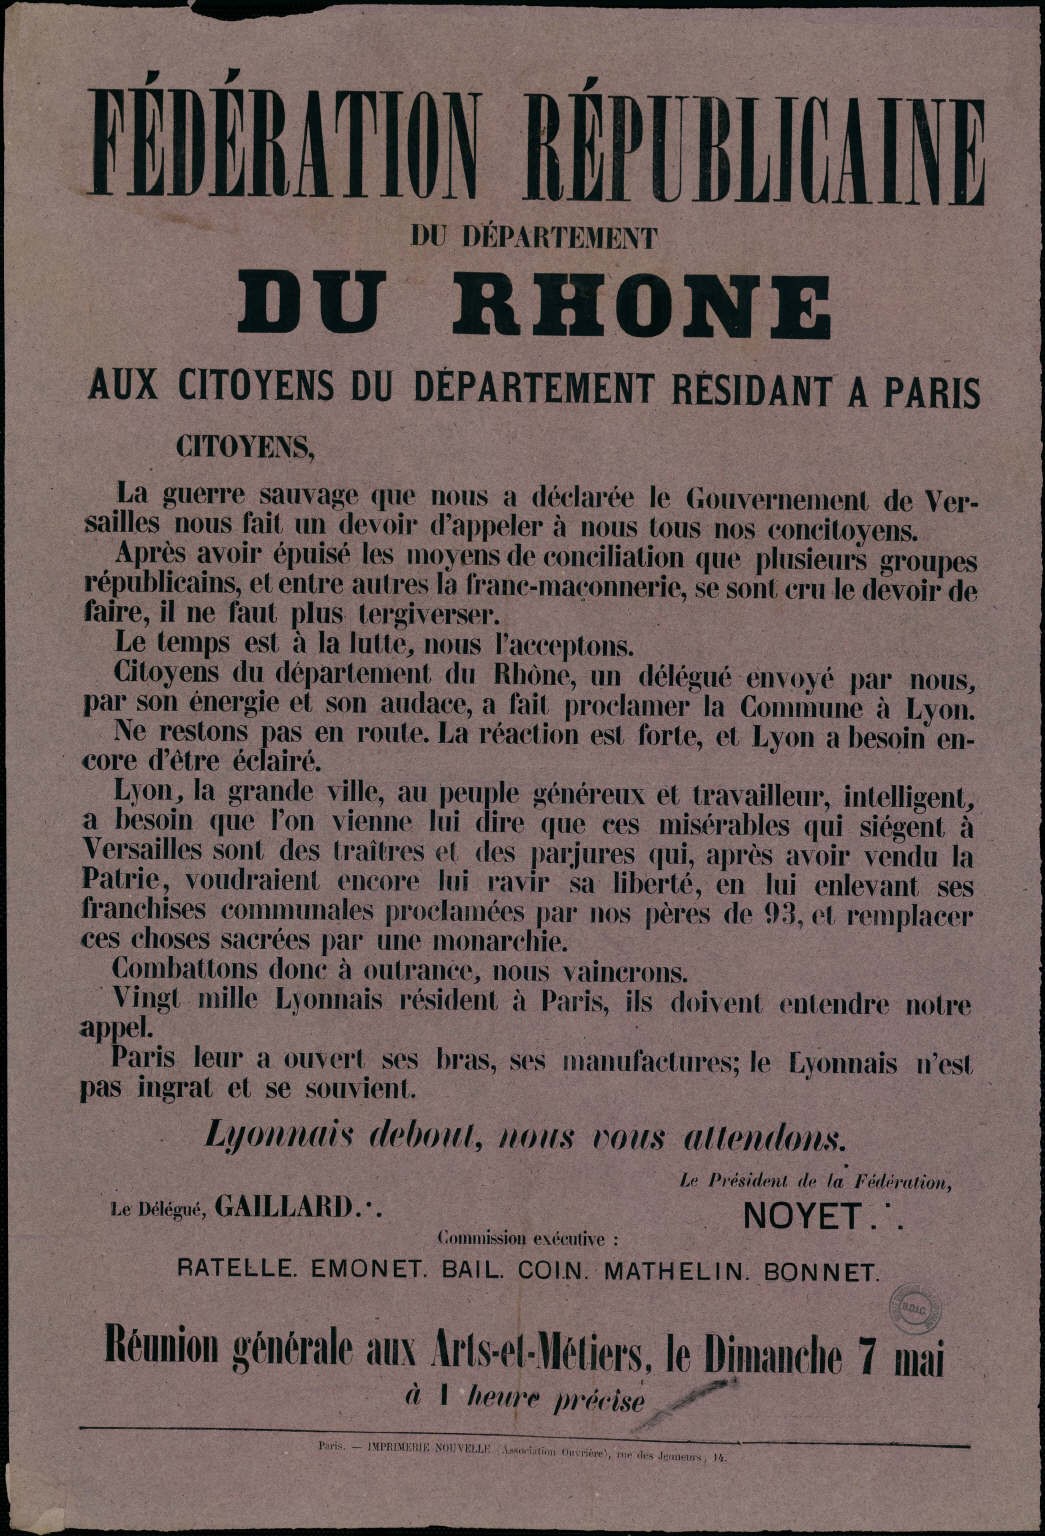 Affiche de la Fédération Républicaine du département du Rhône appelant les citoyens du département à soutenir la Commune de Paris (7 mai 1871)